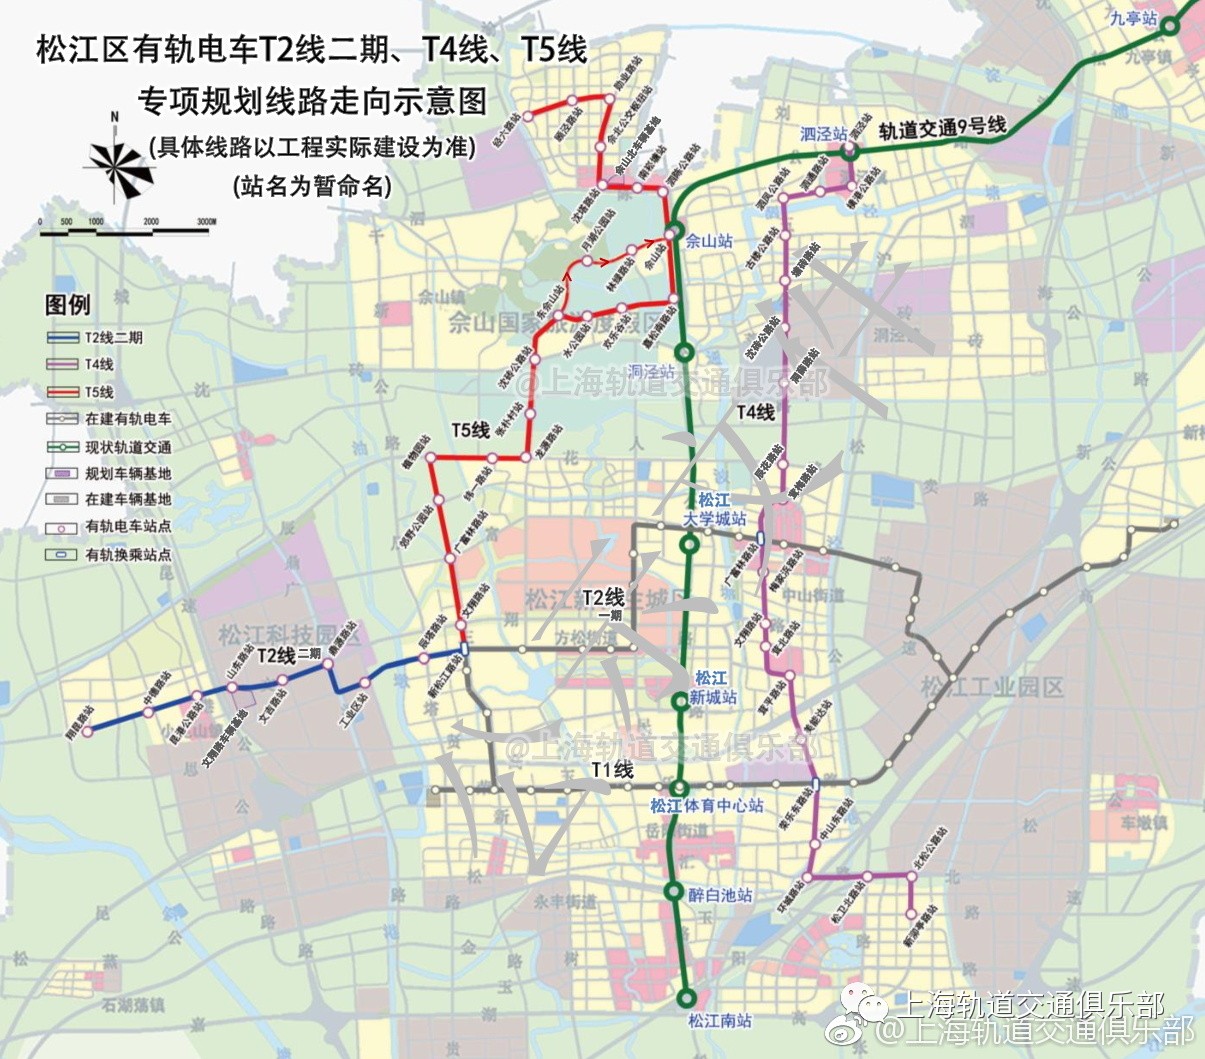 ▼ 松江区有轨电车t2线二期,t4线,t5线线路走向示意图根据《关于同意 